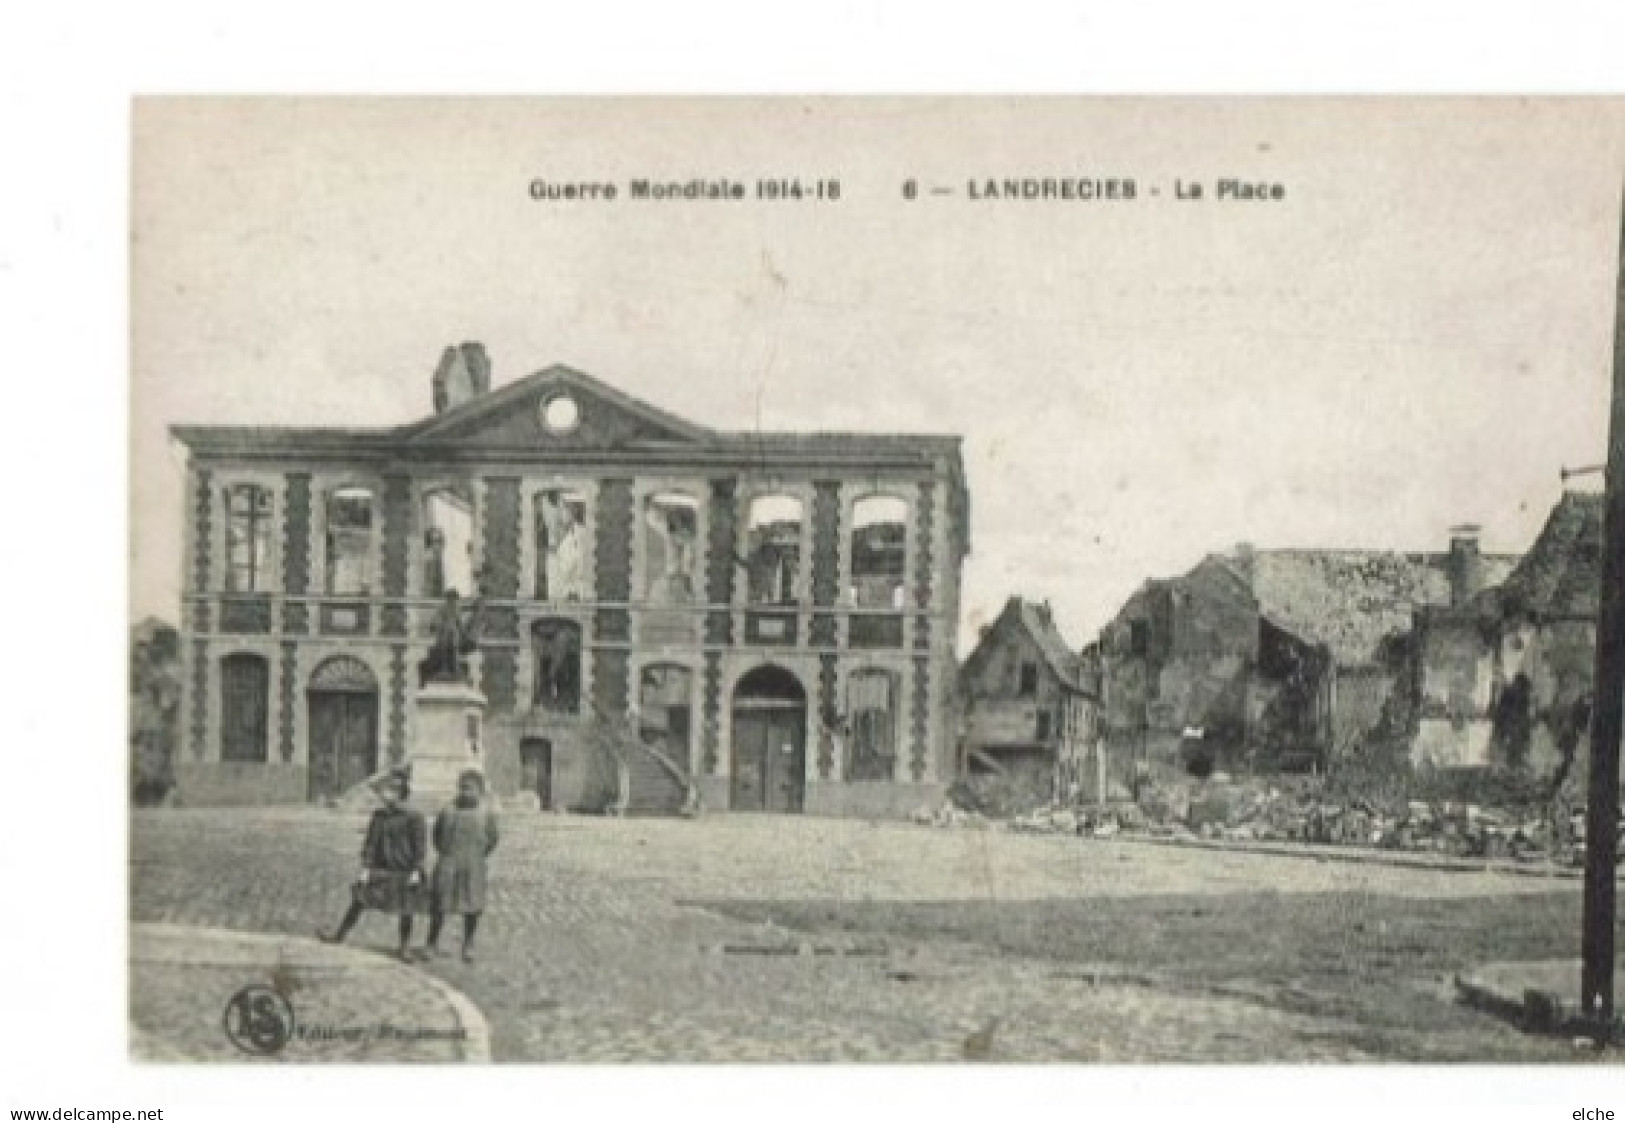 Landrecies. La Place. Guerre Mondiale 1914-18 - Landrecies